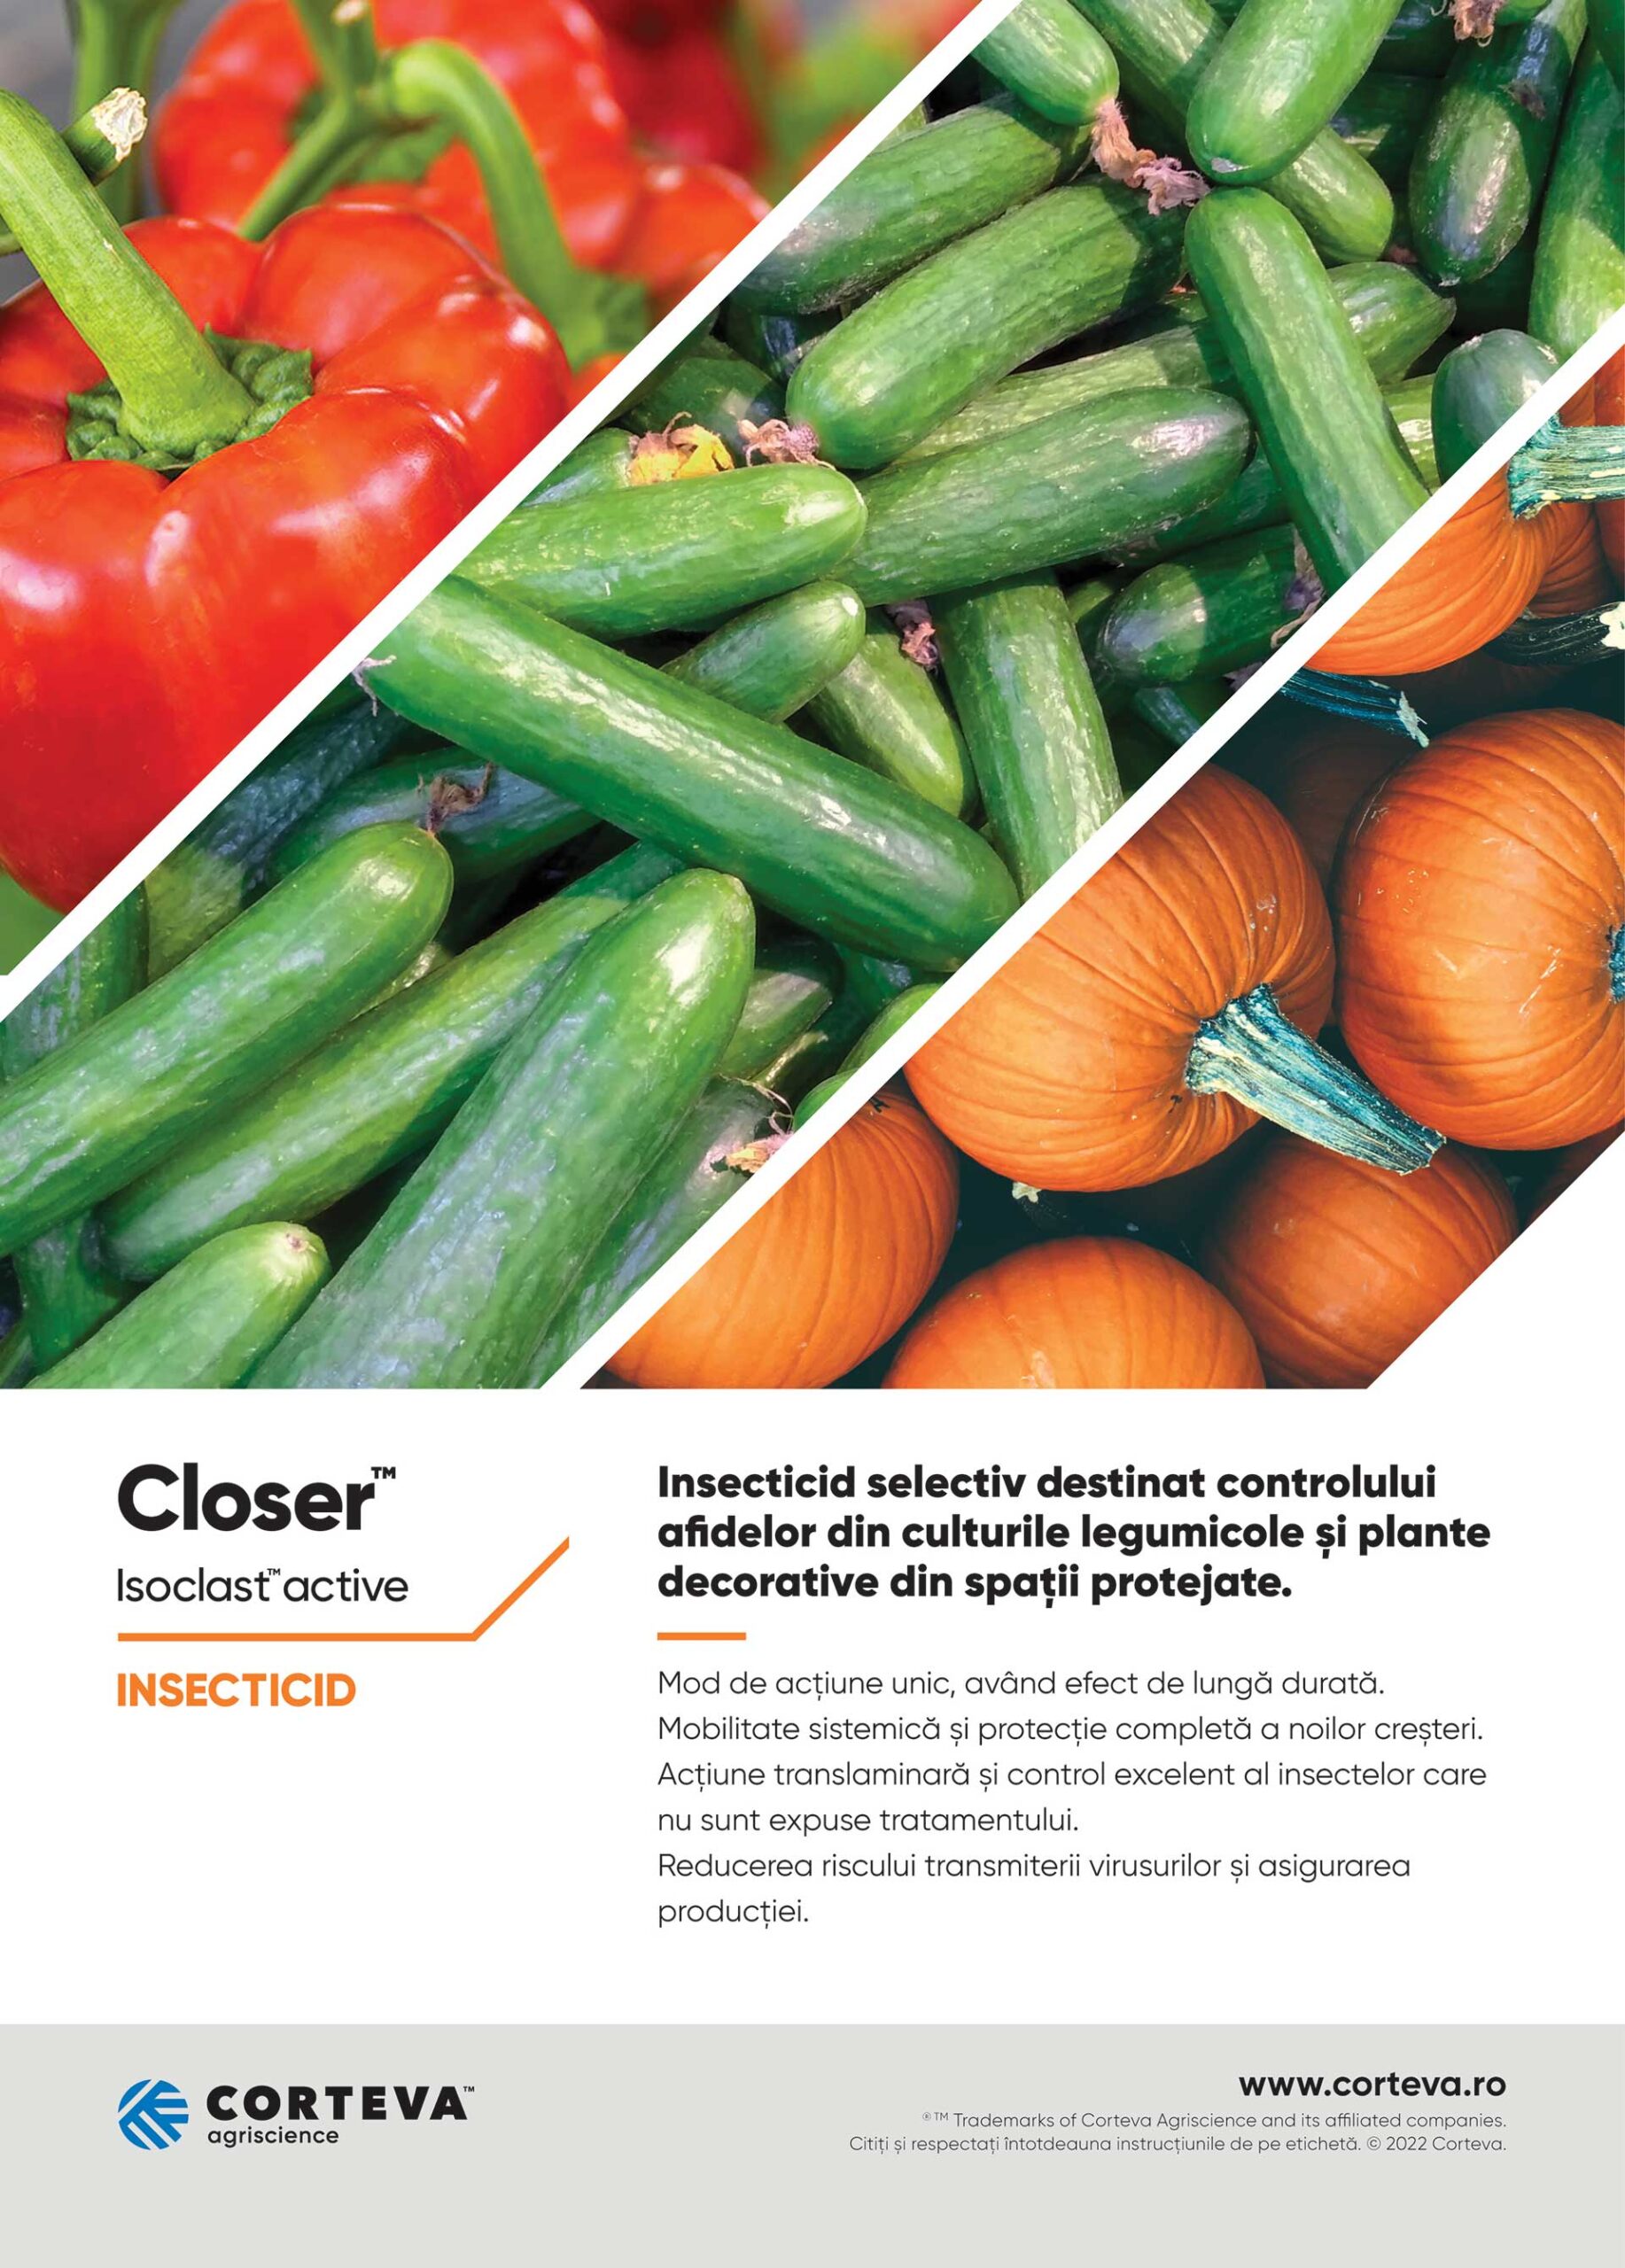 CLOSER™, Corteva, solutia perfecta pentru combaterea afidelor din culturile de legume, diminuarea transmiterii virusurilor la plantele de cultura